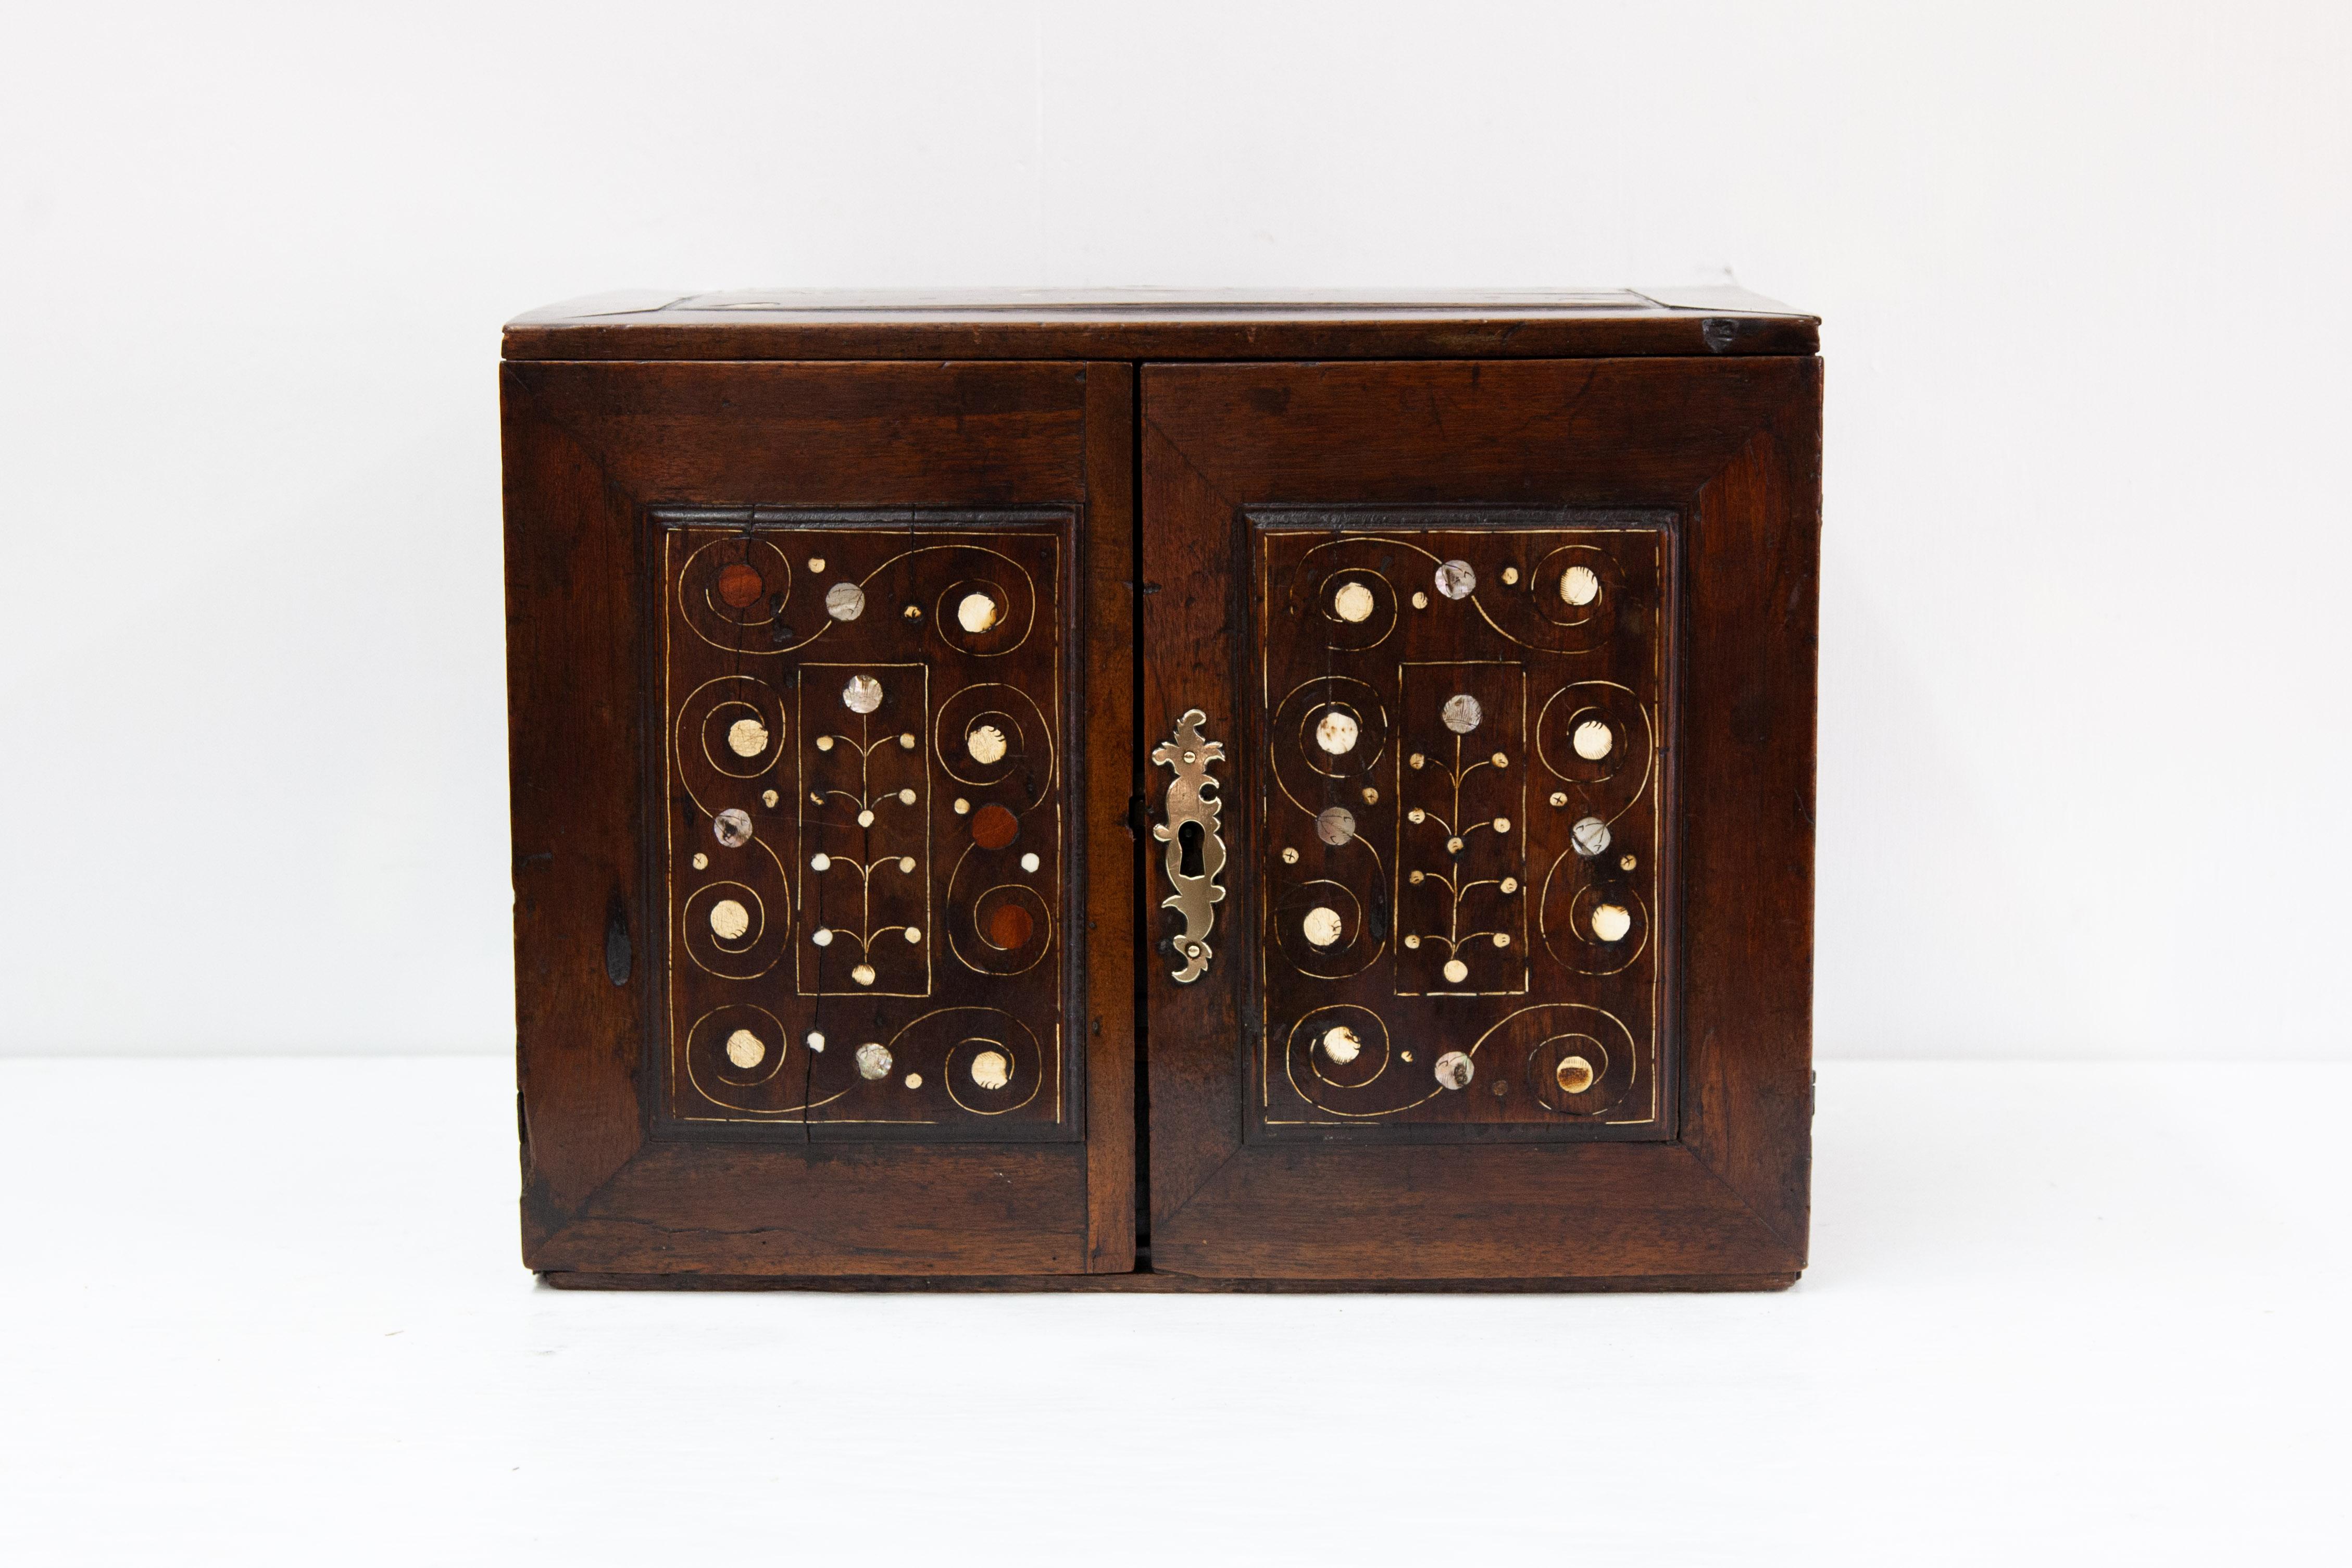 Einbauschrank aus Nussbaum mit Intarsien aus dem 18. Jahrhundert, Deckel, Vorderseite und Seiten mit eingelegten Paneelen mit skurrilen Intarsien, die gebänderten Innenschubladen mit Perlmuttintarsien.